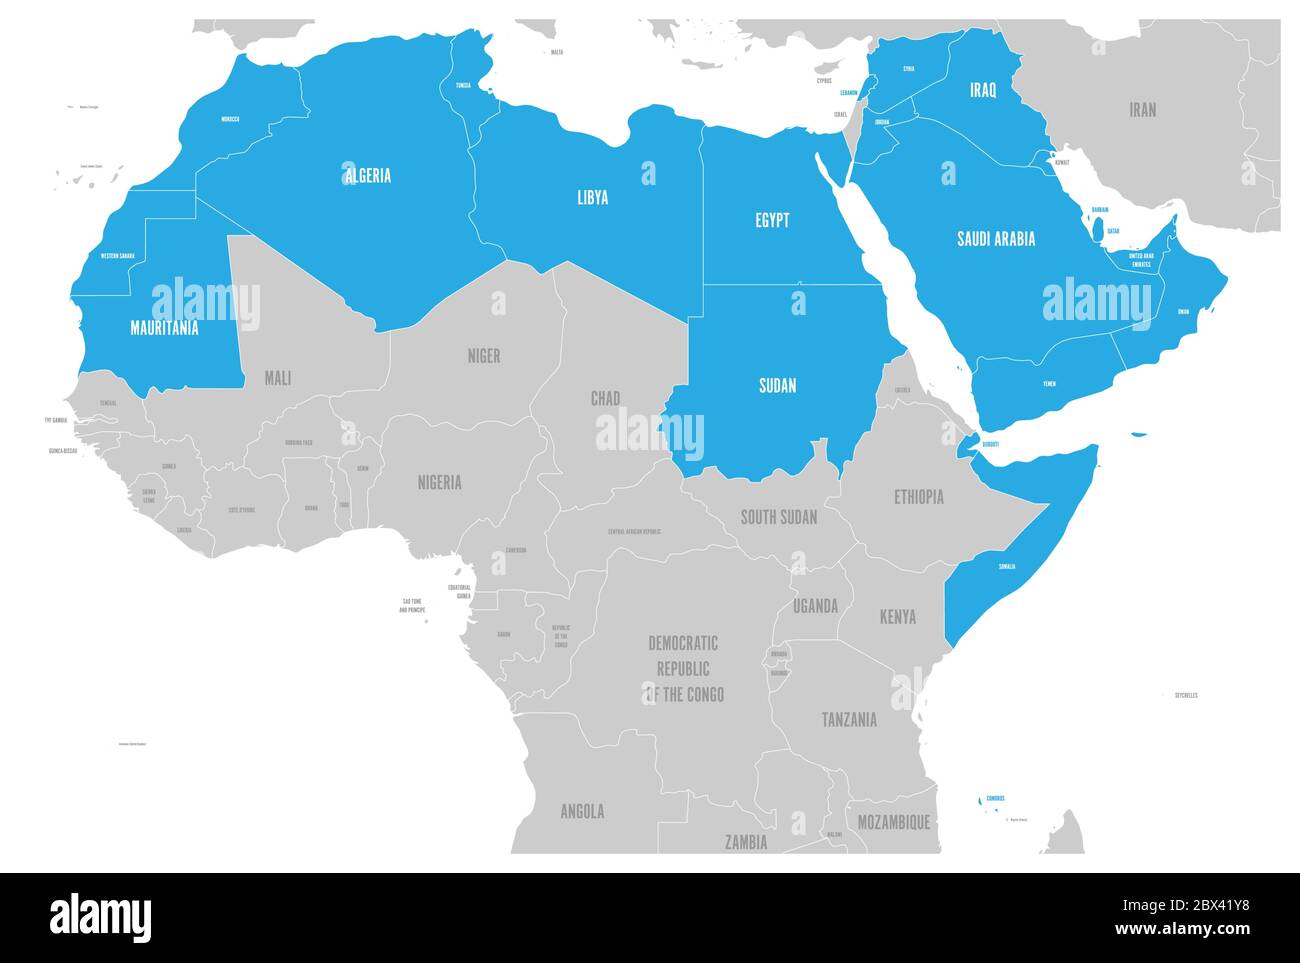 Arabische Welt Staaten politische Karte mit erhellten 22 arabischsprachigen Ländern der Arabischen Liga. Nordafrika und Naher Osten. Vektorgrafik. Stock Vektor